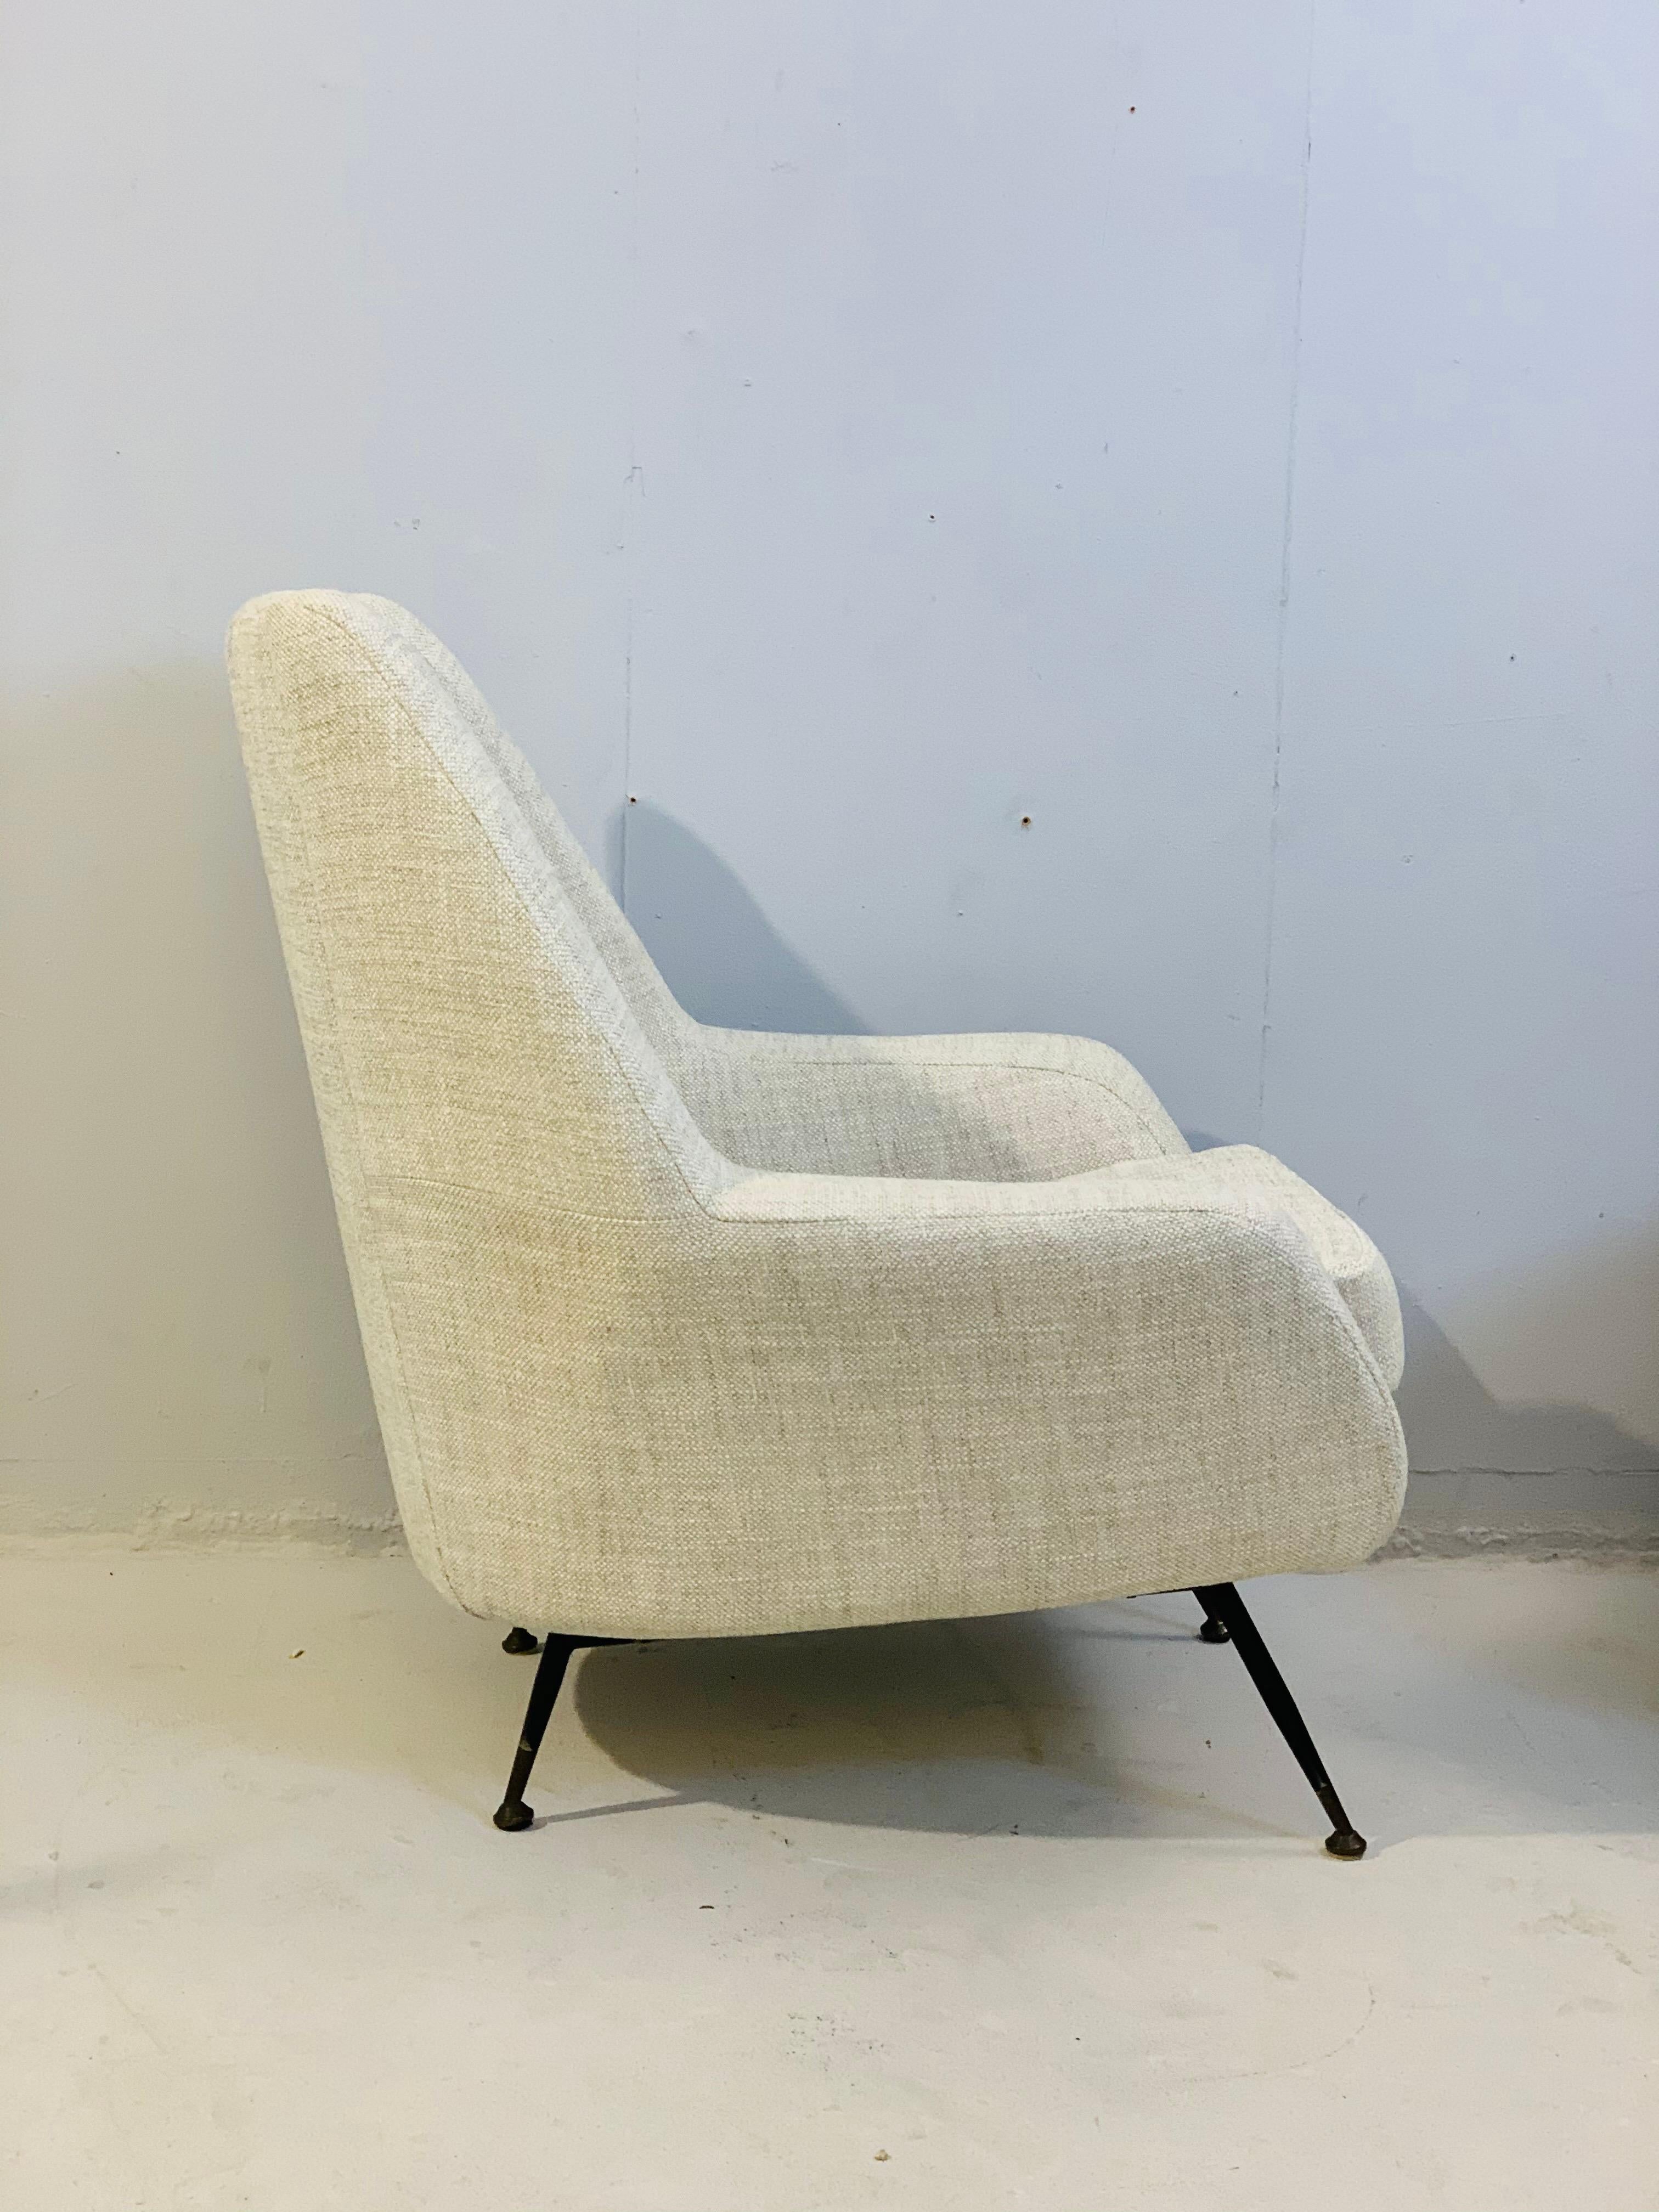 Pareja de sillones italianos modernos de mediados de siglo en tela blanca, hacia 1950 Italiano en venta